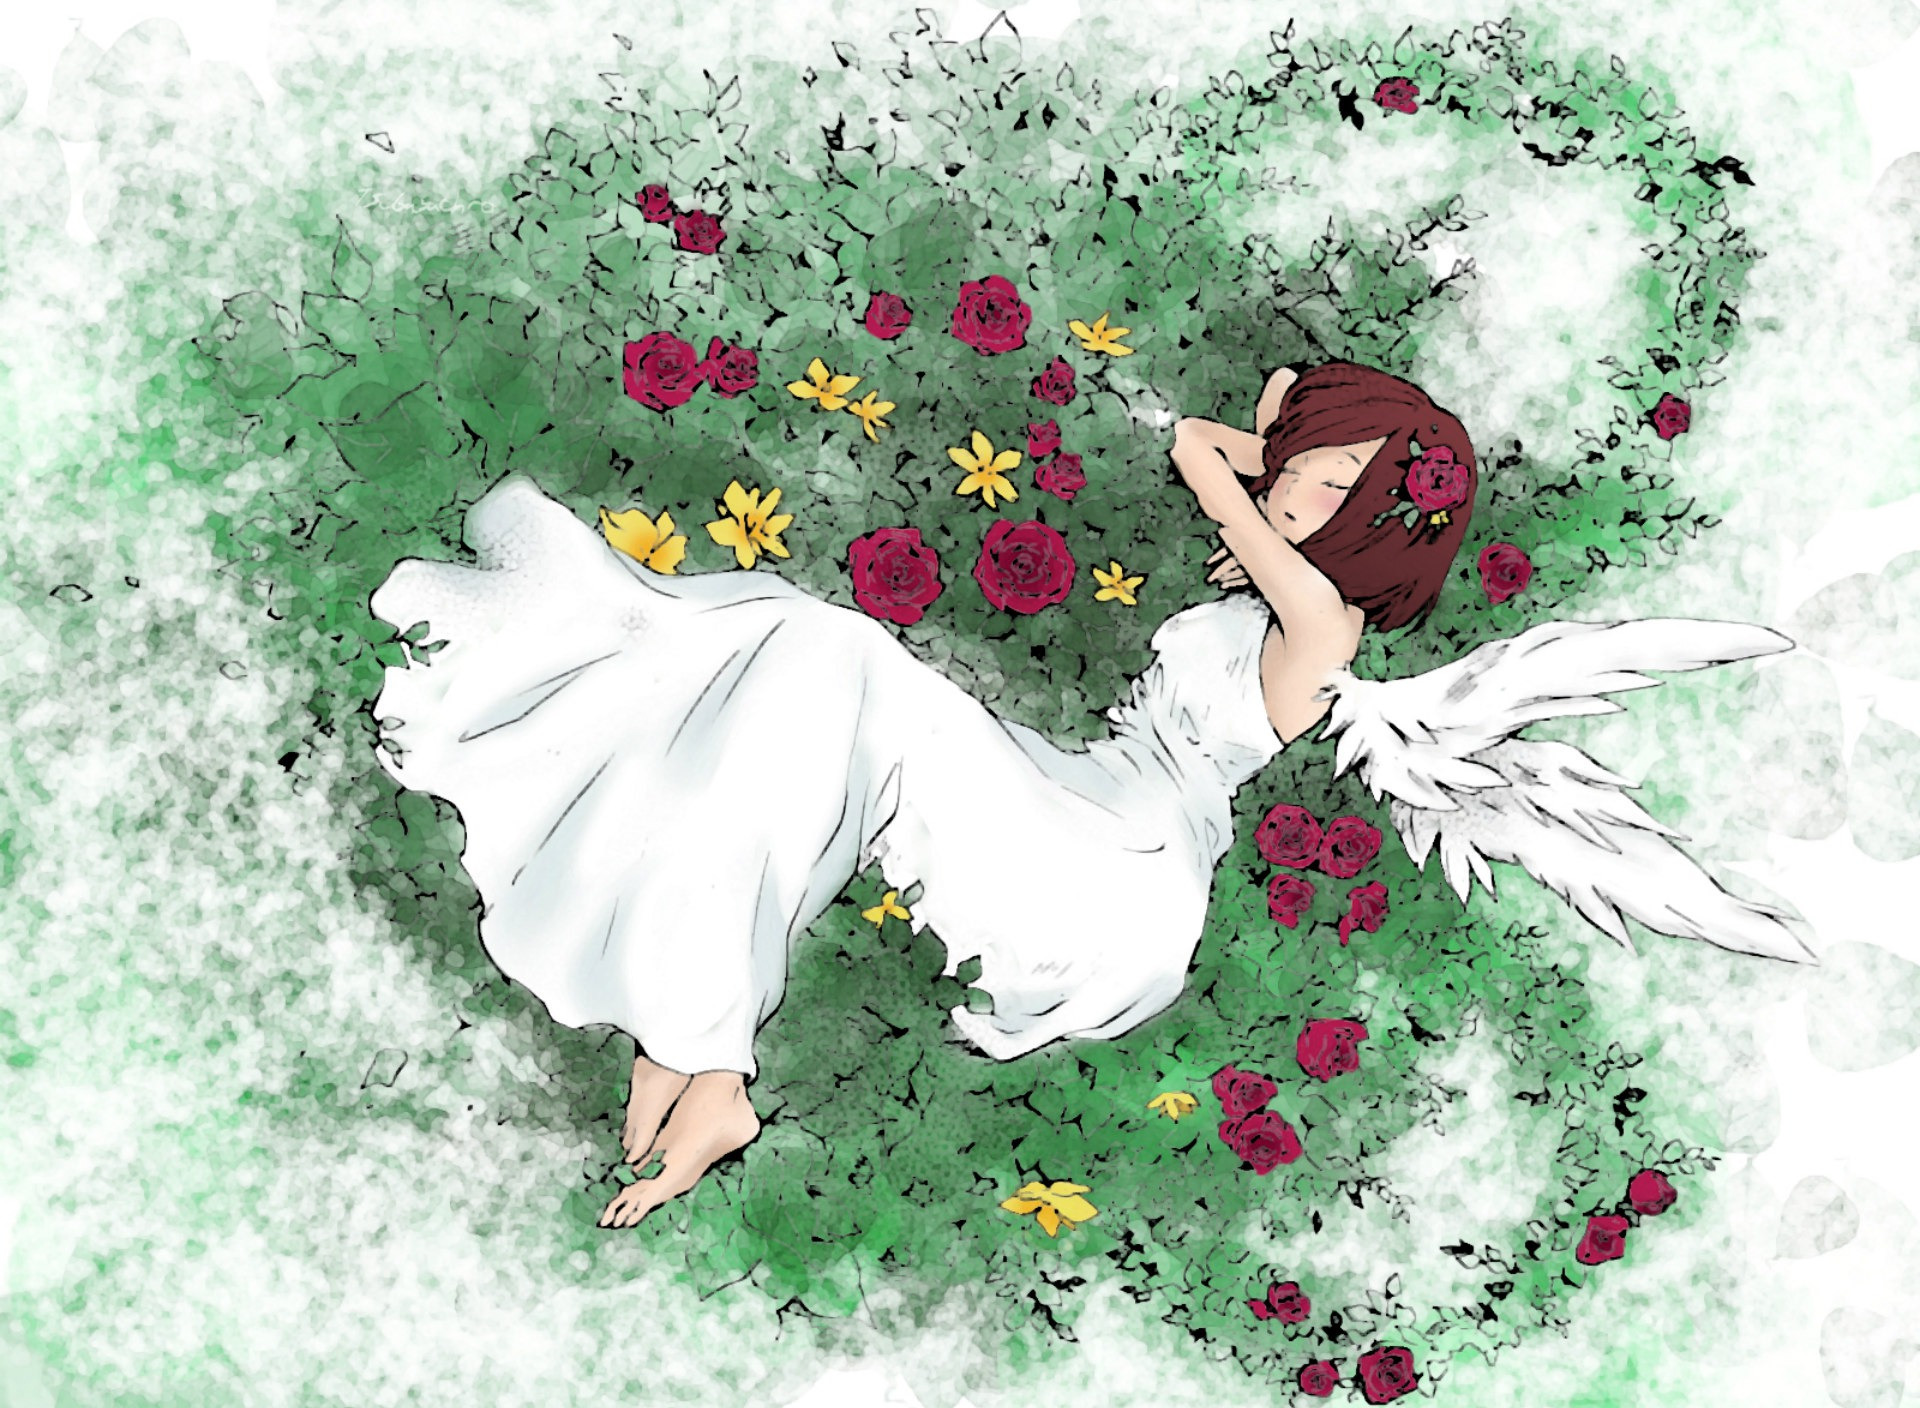 Гигант дарит девочке цветочек арт. Женщина лежит на цветах белом платье арт. Фловер герлз сон трава. Маки зенин фан арты в платье